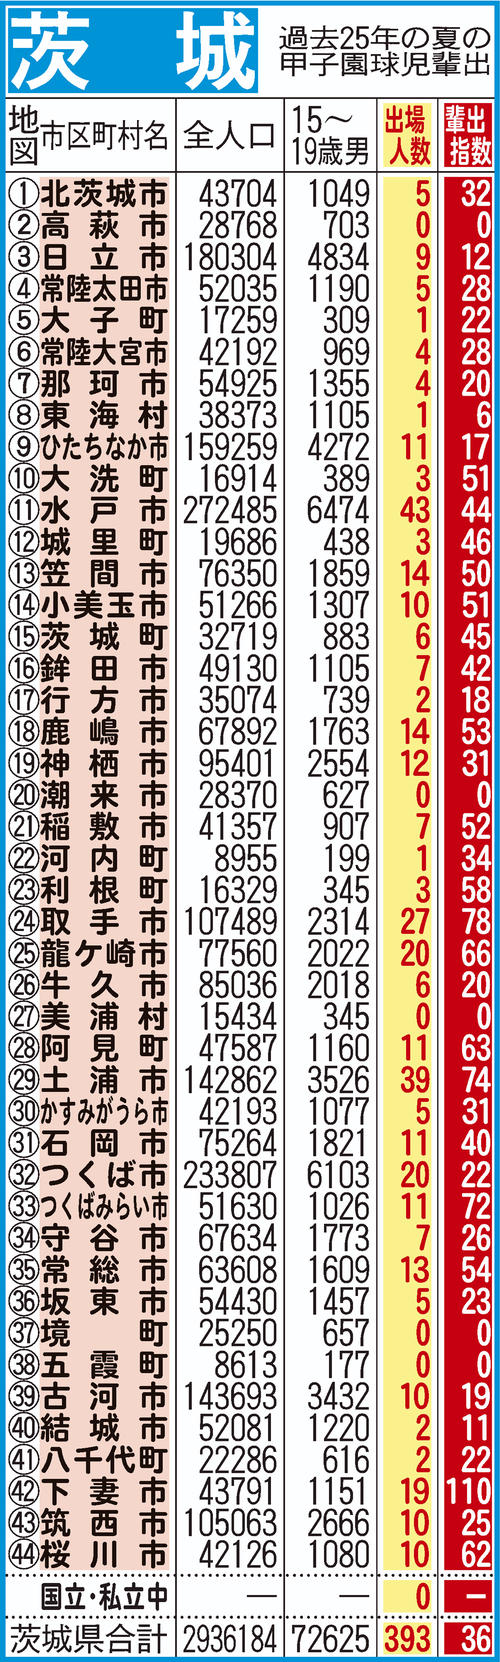 過去25年間における茨城の甲子園指数